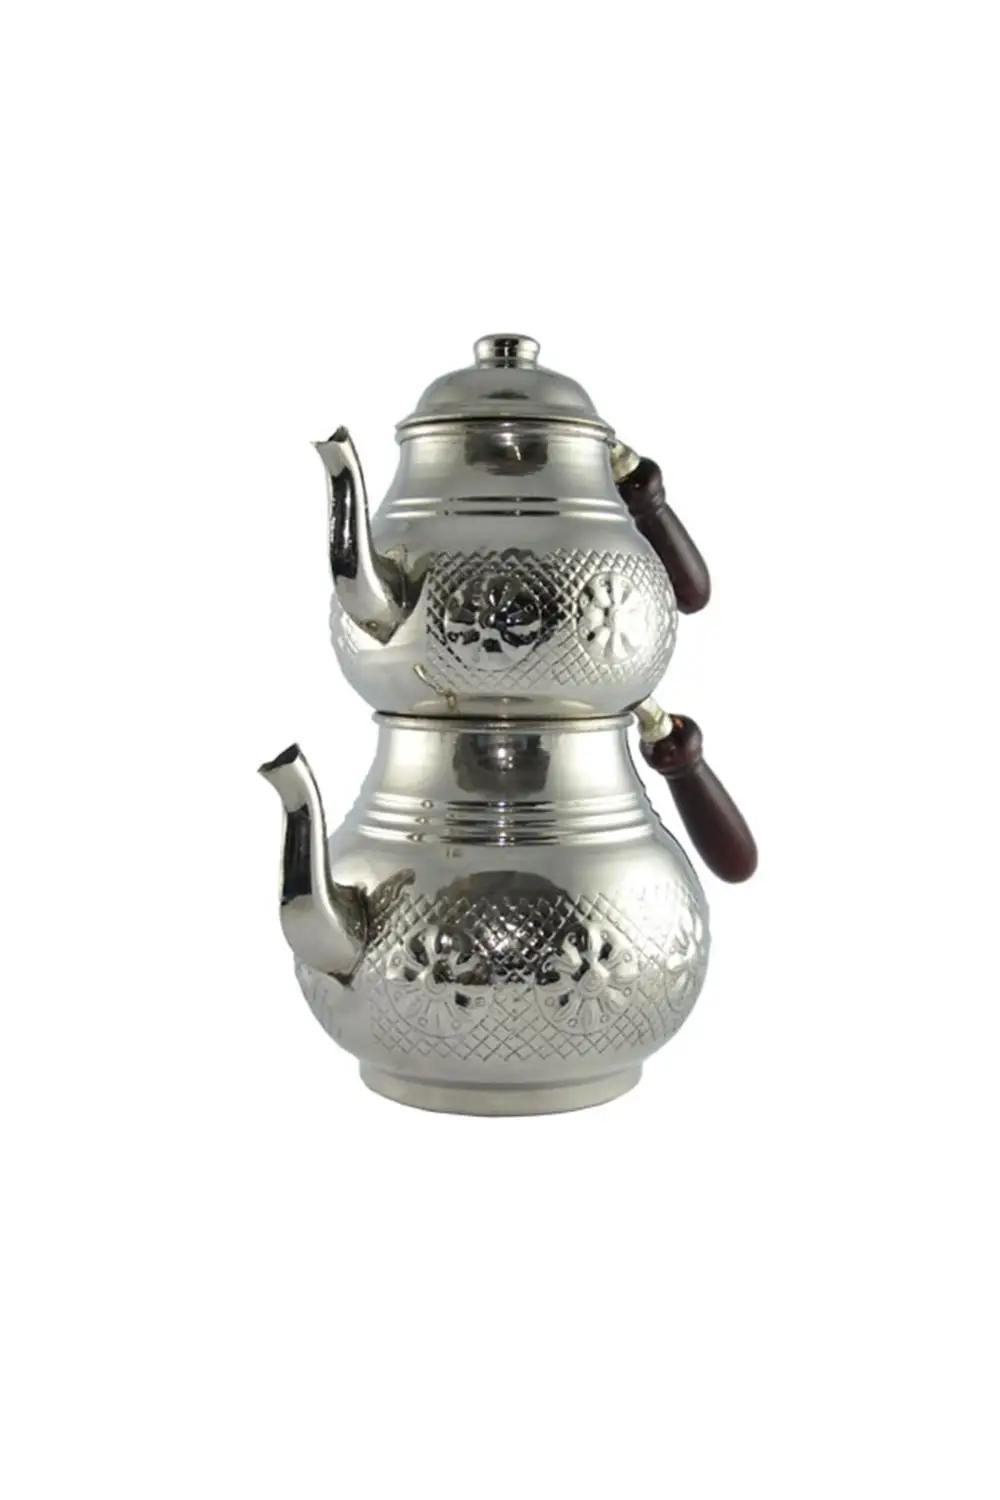 Турецкий чайник | медный чайник | набор чайников ручной работы | Традиционный турецкий чайник | чайный набор | турецкий чайник | чайники